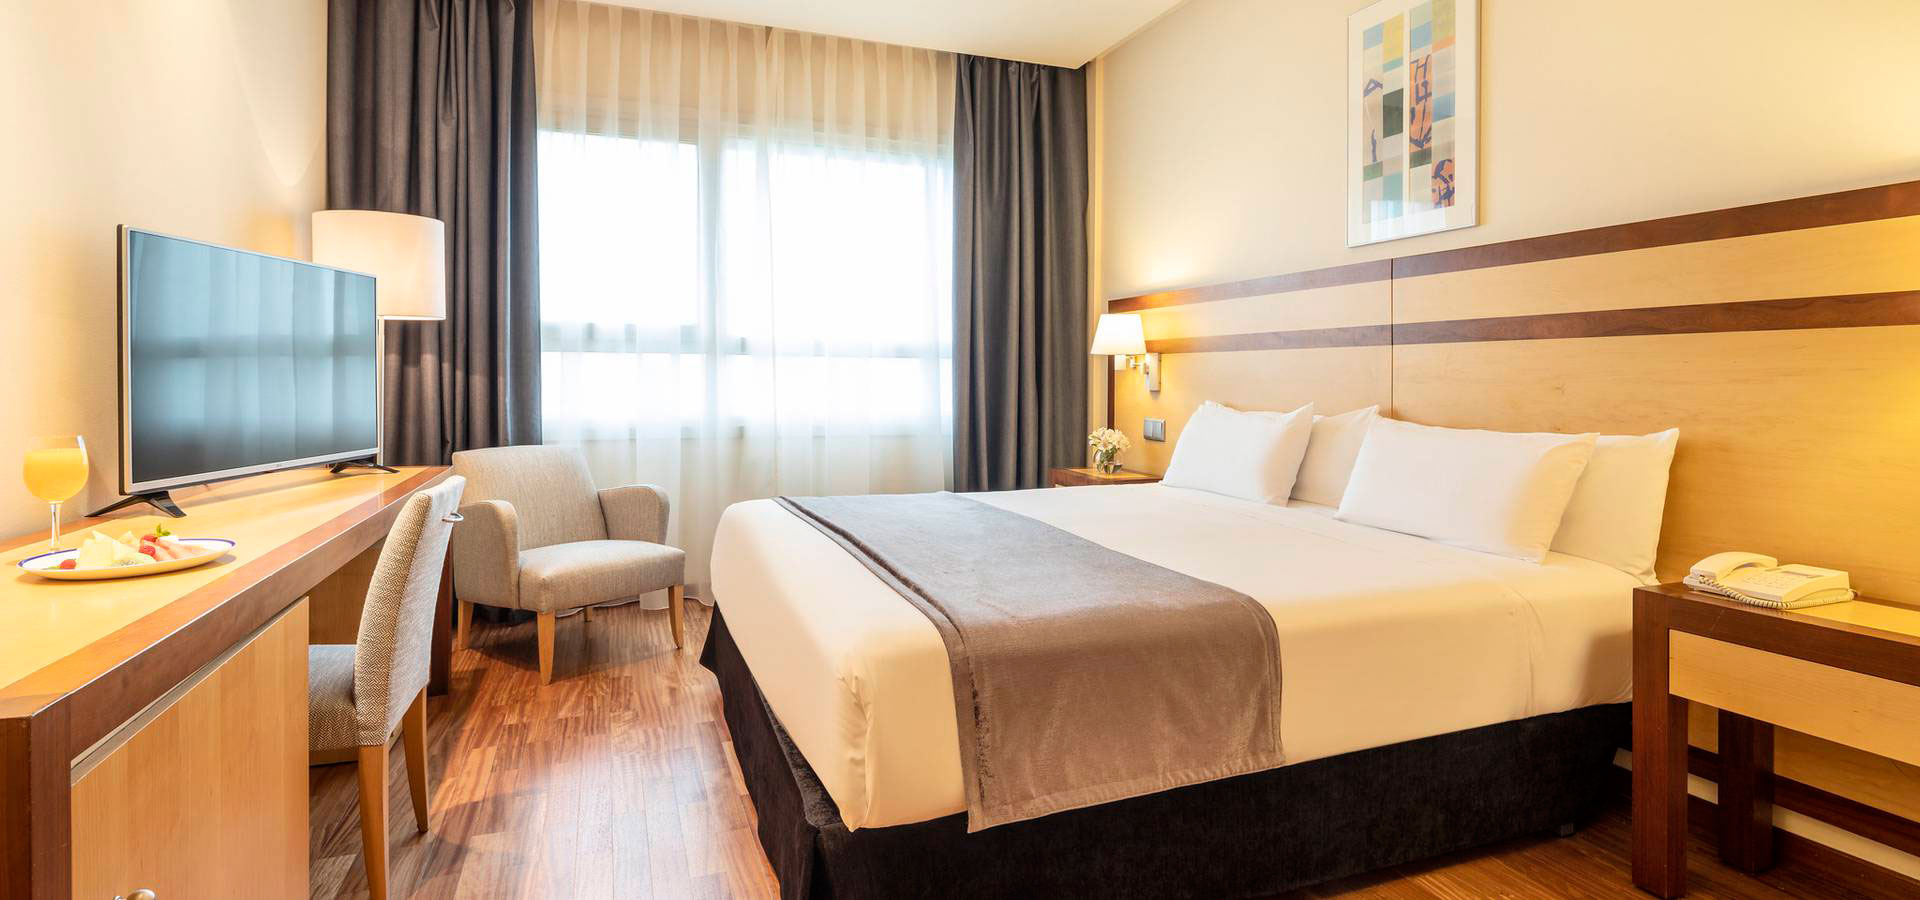 O Hotel Ilunion Pio XII é uma das opções de hospedagem de Madrid